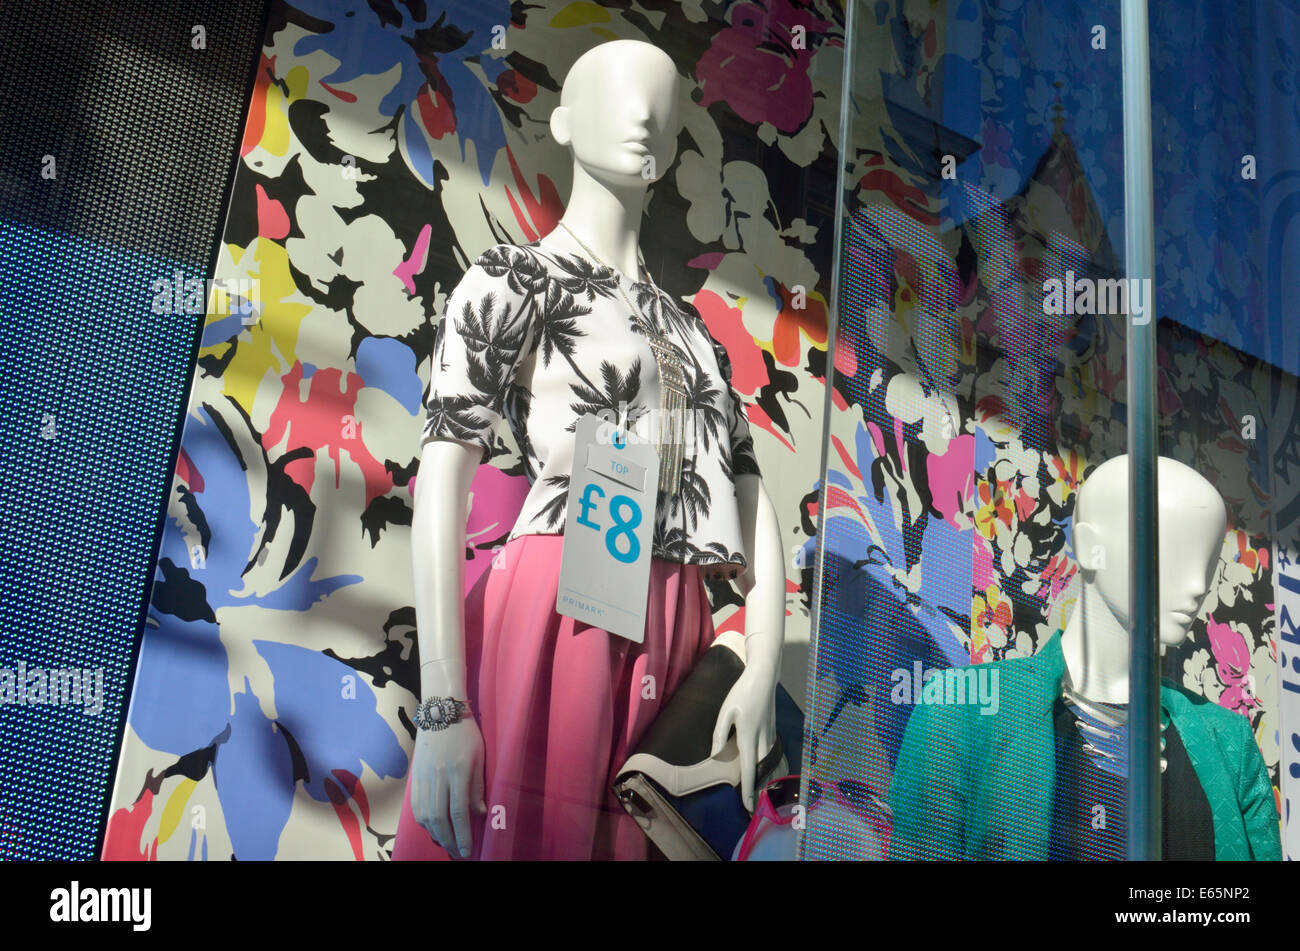 Günstigen Preis von £8 auf Kleidung in einem Primark speichern Fenster, London, UK Stockfoto